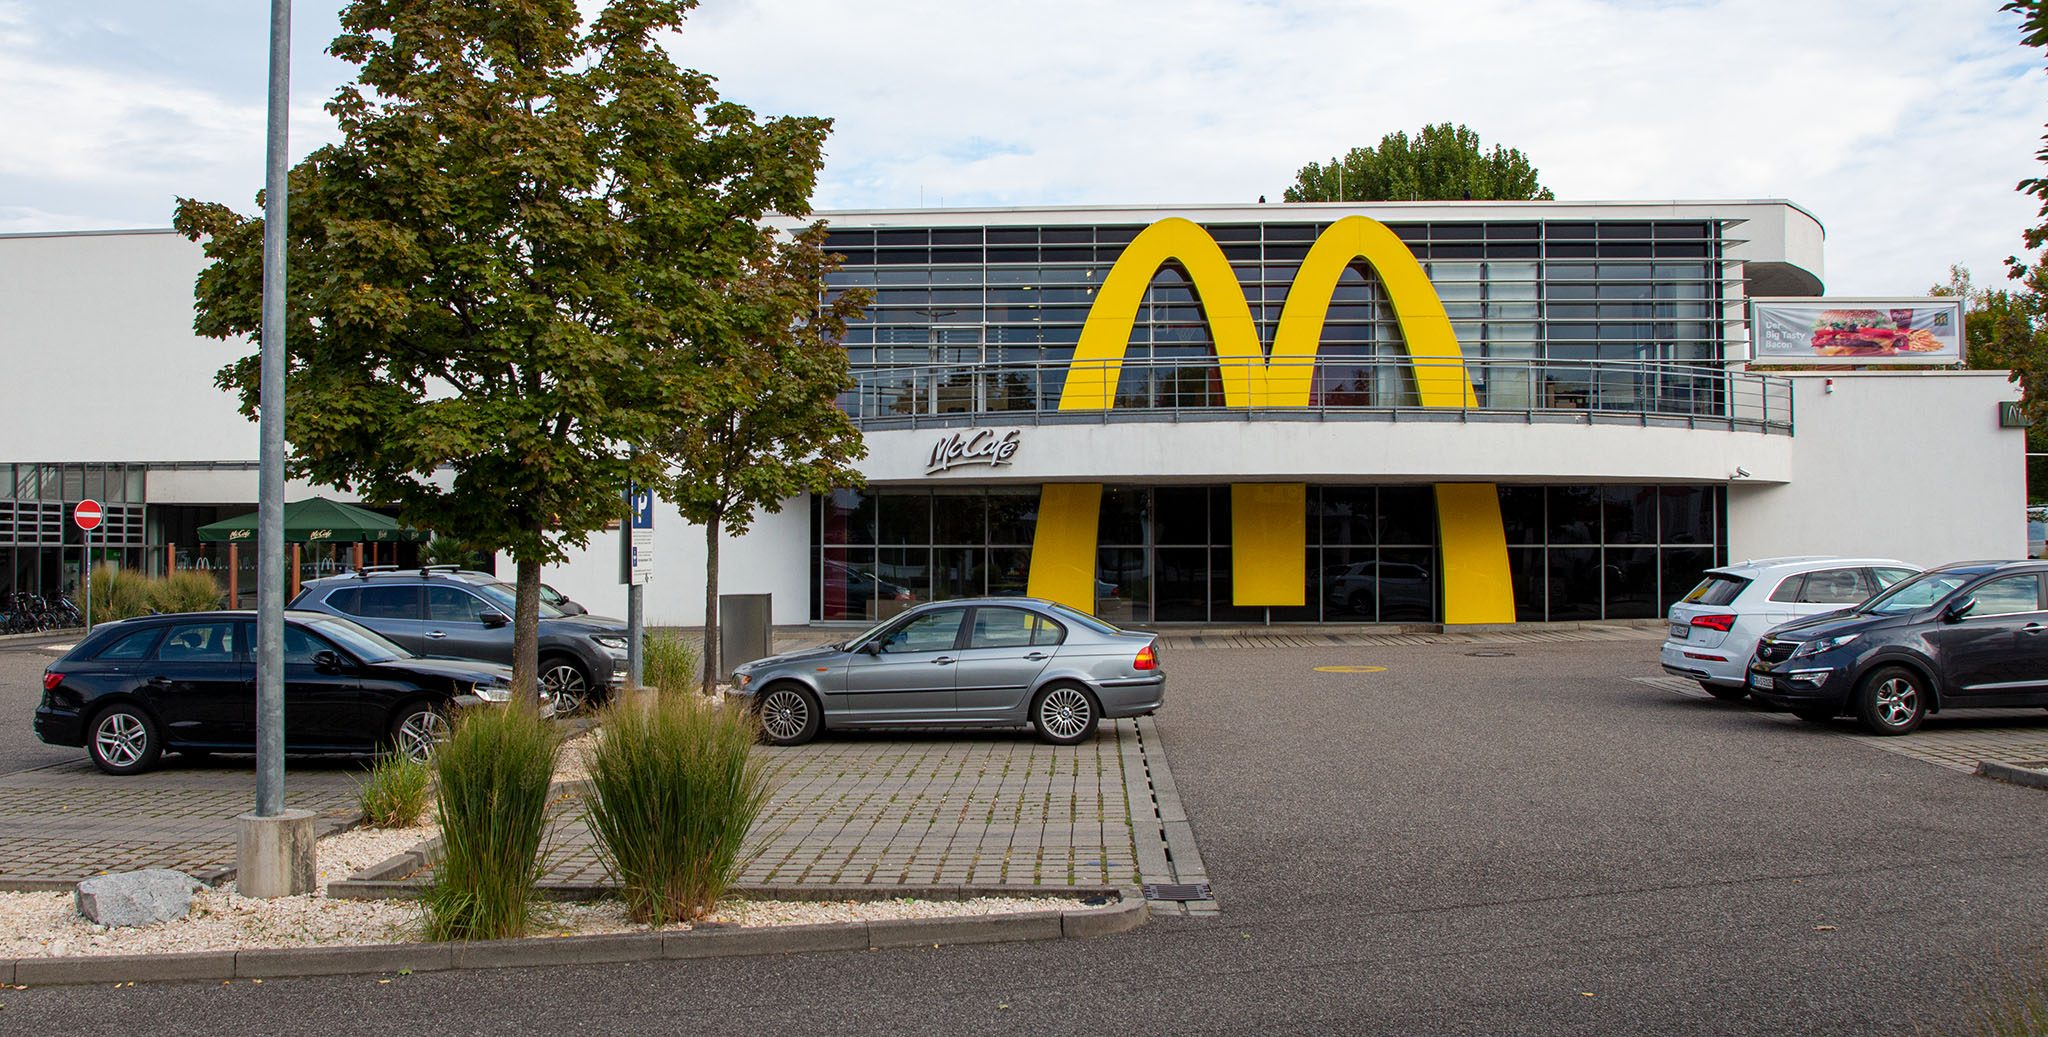 Das McDonald’s-Restaurant in Freiburg im Breisgau (Basler Straße)